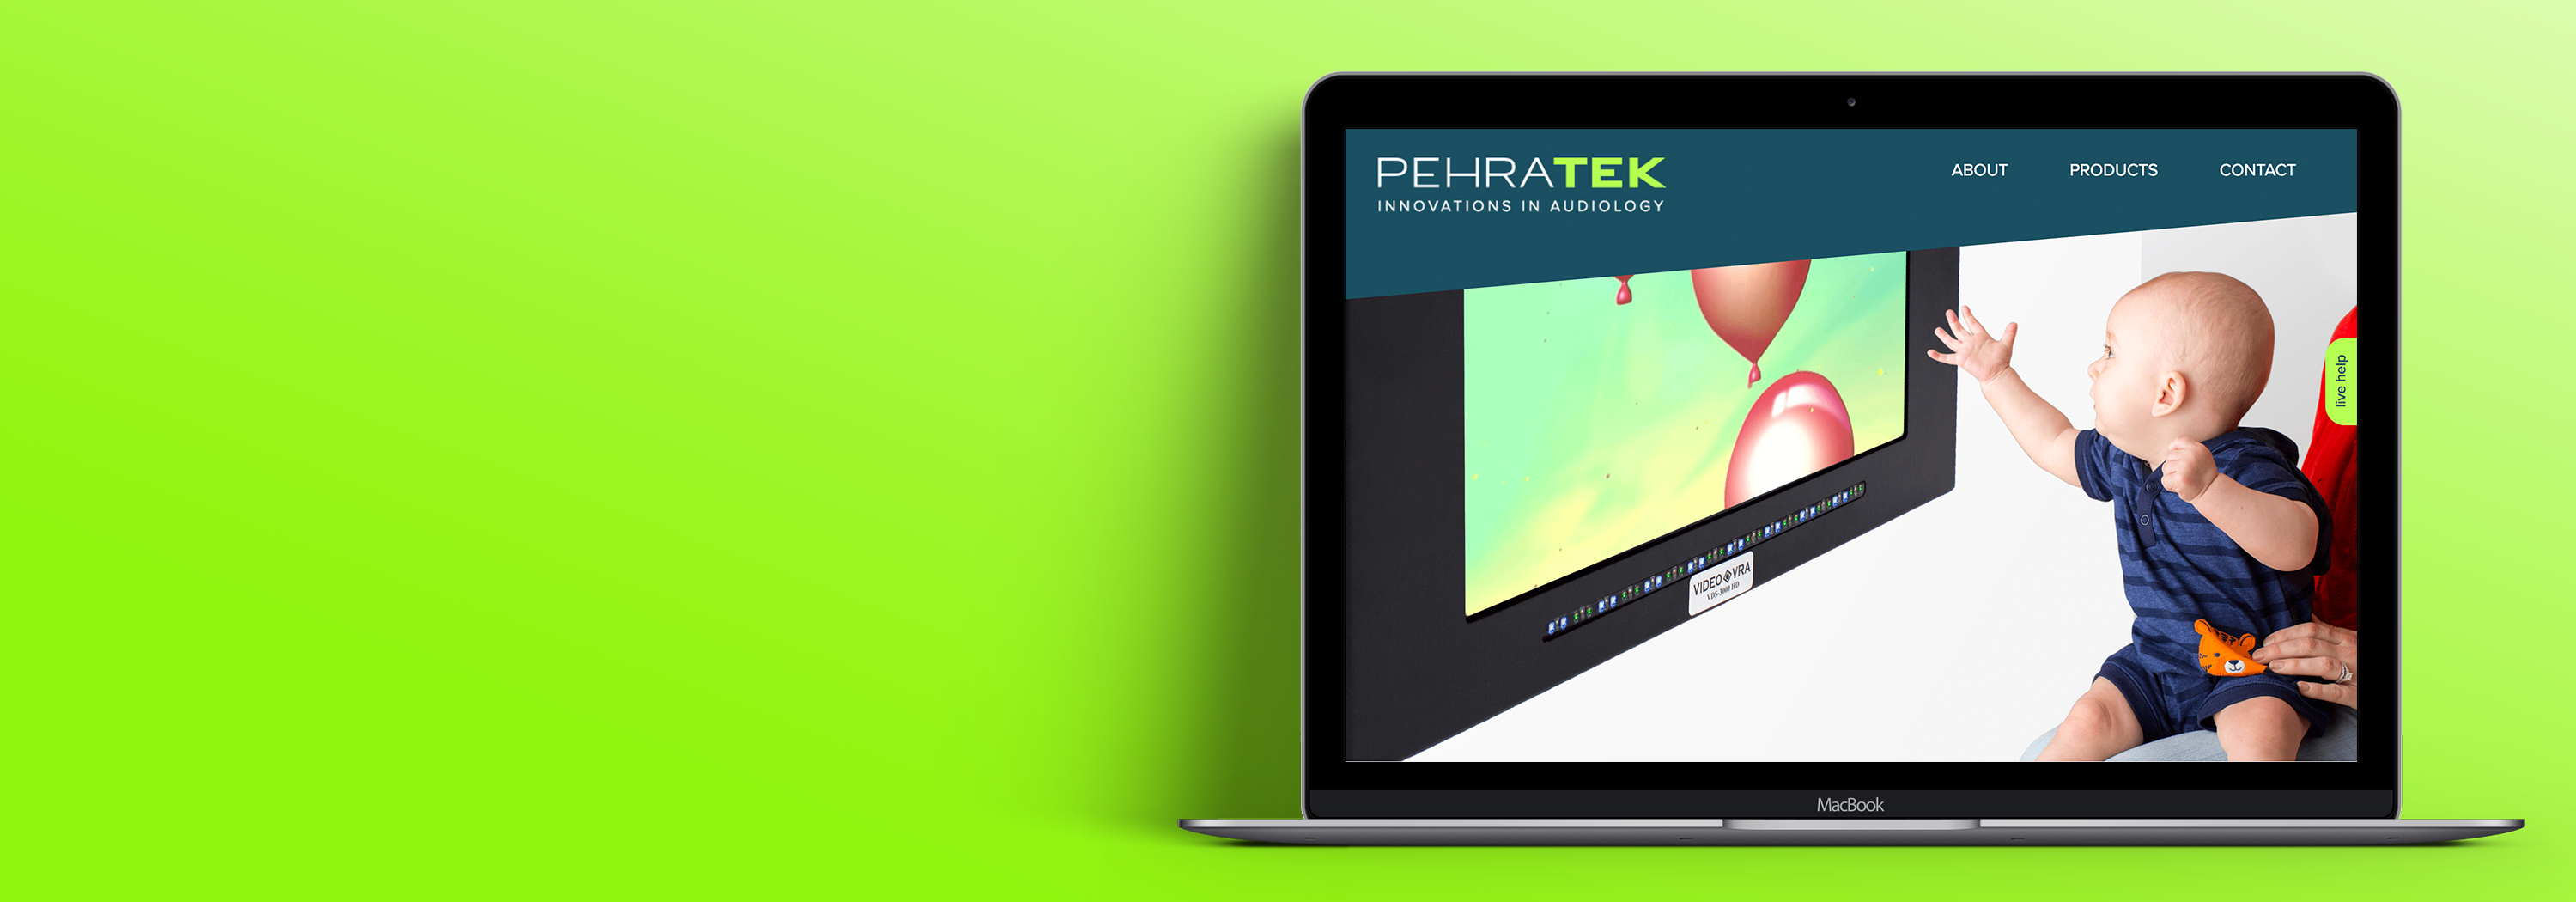 Pehratek Website Design and Development